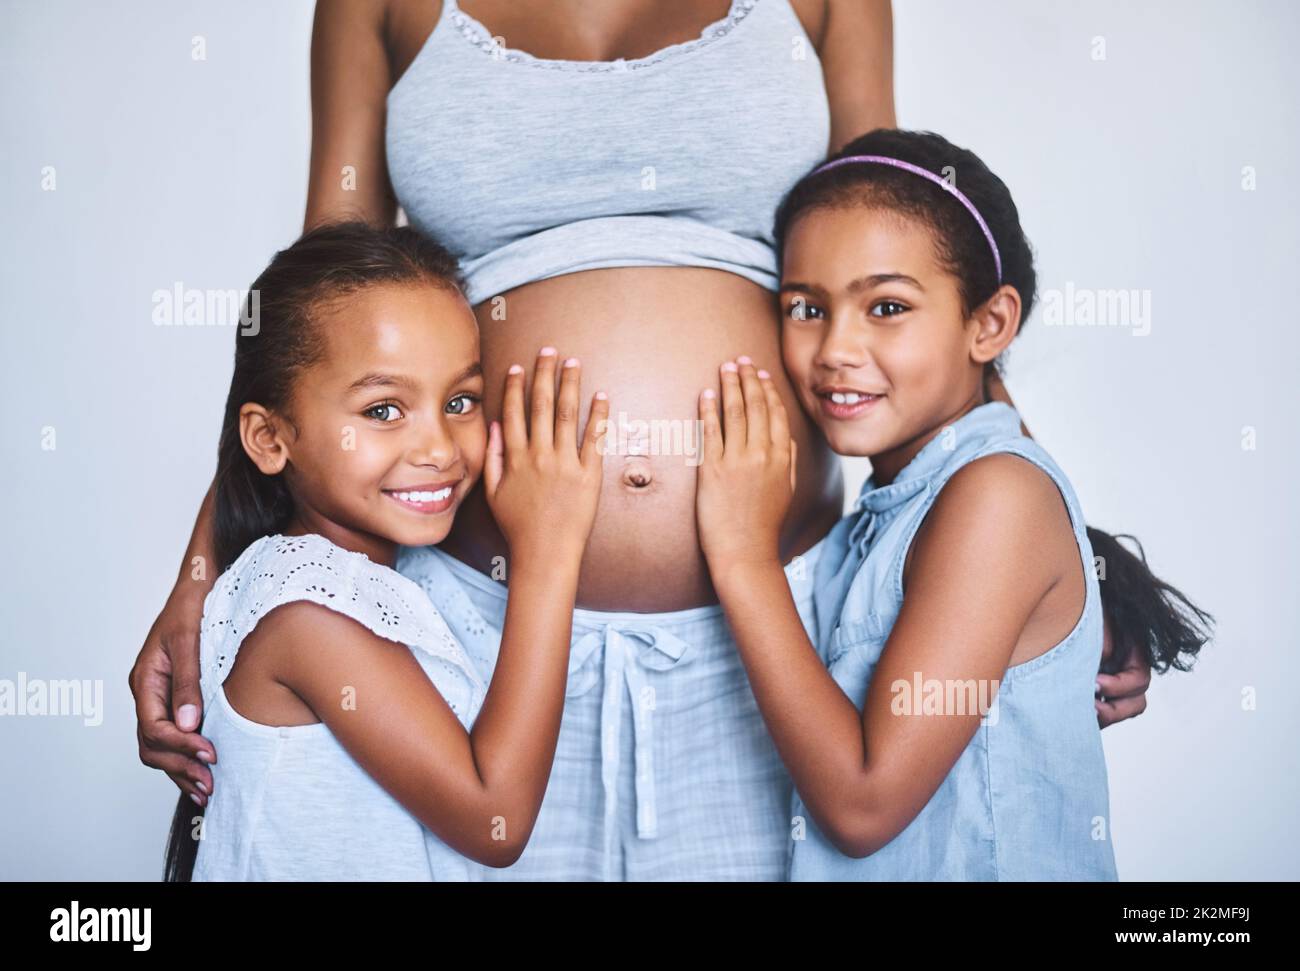 Hören wir mal zu. Porträt von zwei fröhlichen kleinen Mädchen, die tagsüber neben ihrer Schwangeren zu Hause stehen. Stockfoto